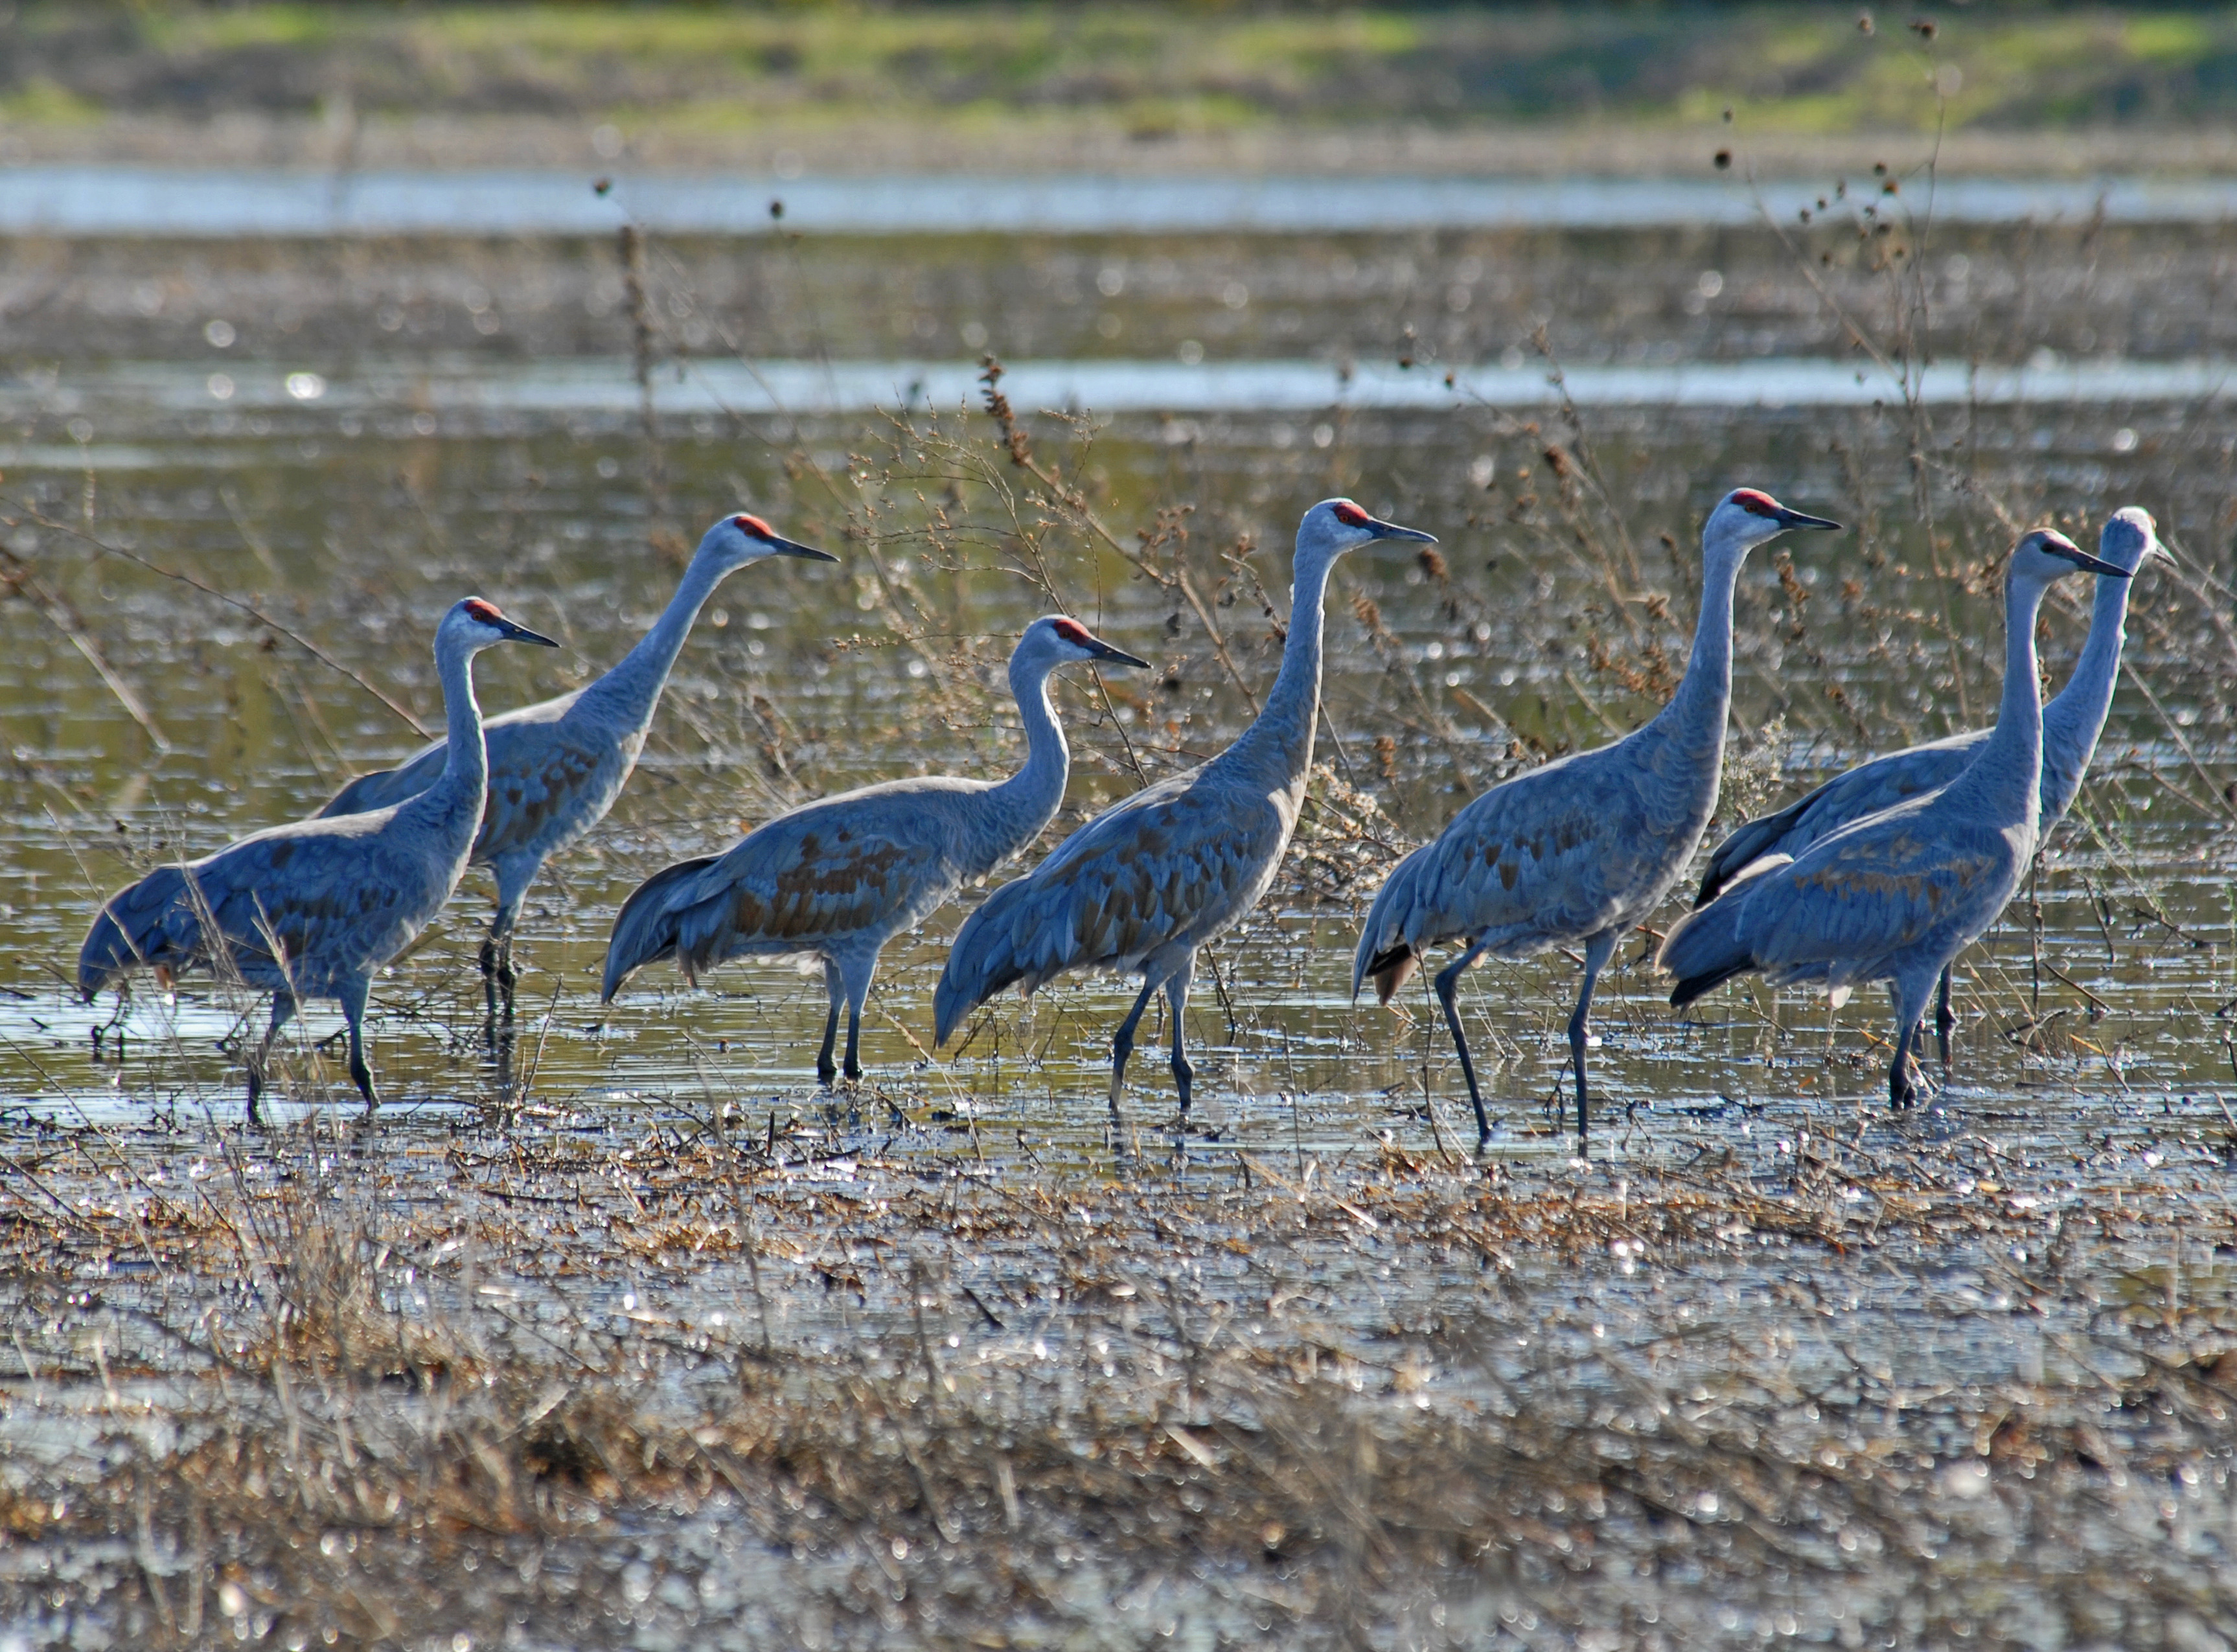 Sandhill cranes in wetland